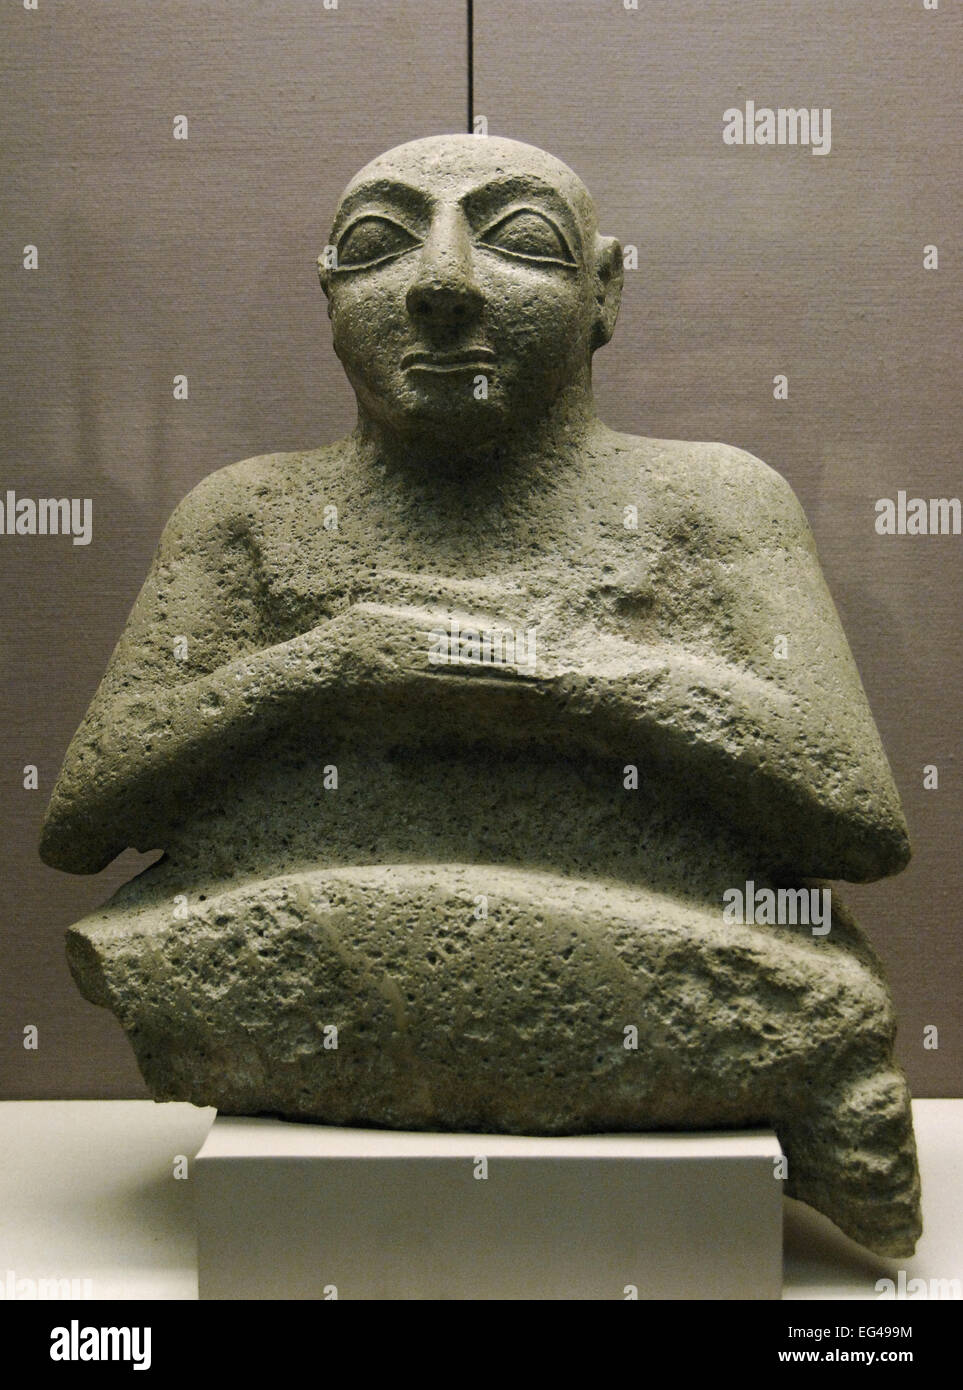 Mesopotamia. Inizio periodo dinastico. Statua di Kurlil. Trovata vicino al tempio di Ninhursag in Tell al-Ubaid. Iraq meridionale. 2500 BC. British Museum. Londra. In Inghilterra. Regno Unito. Foto Stock